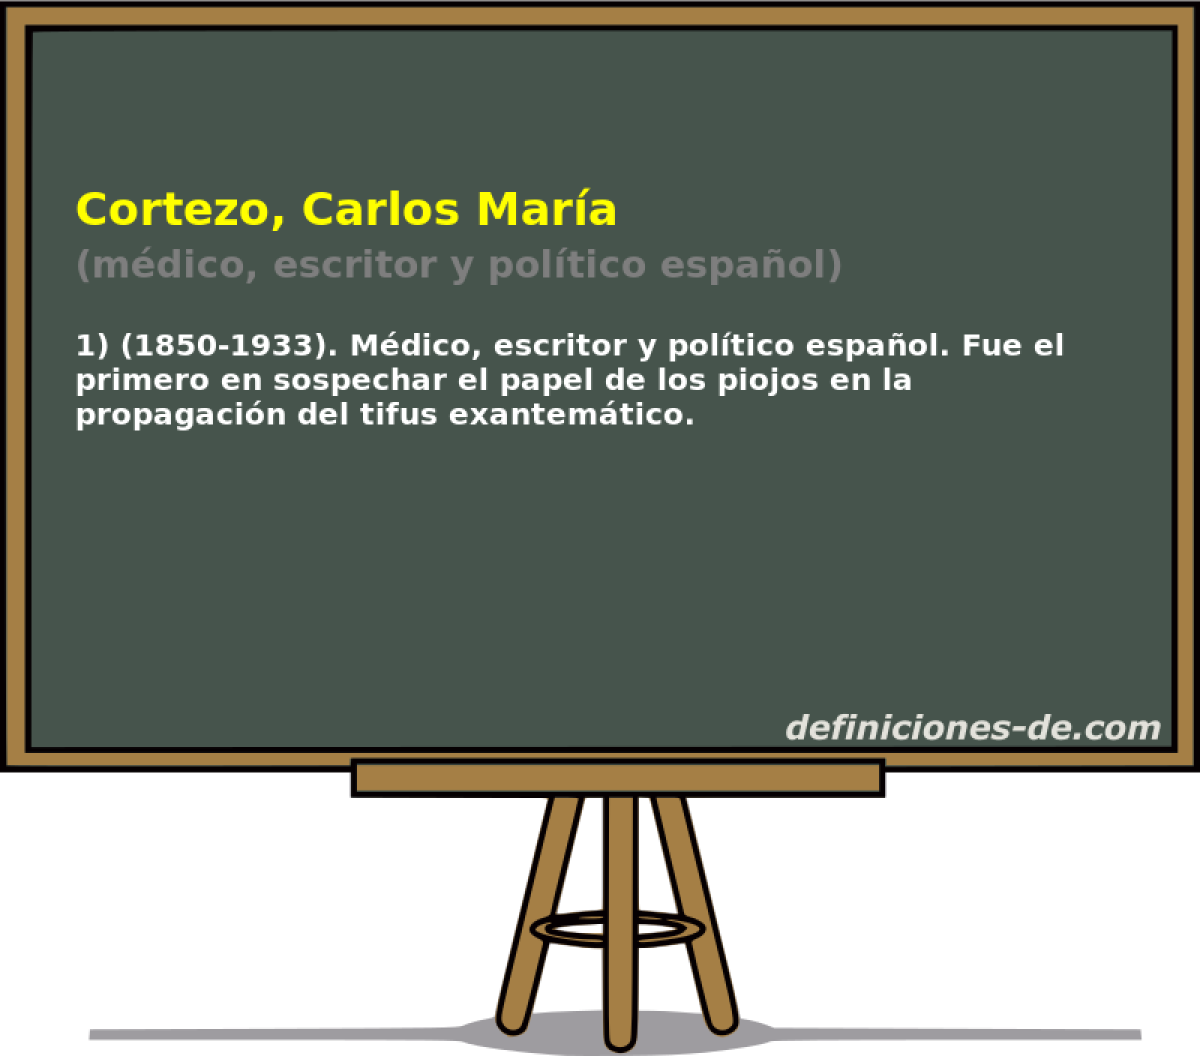 Cortezo, Carlos Mara (mdico, escritor y poltico espaol)